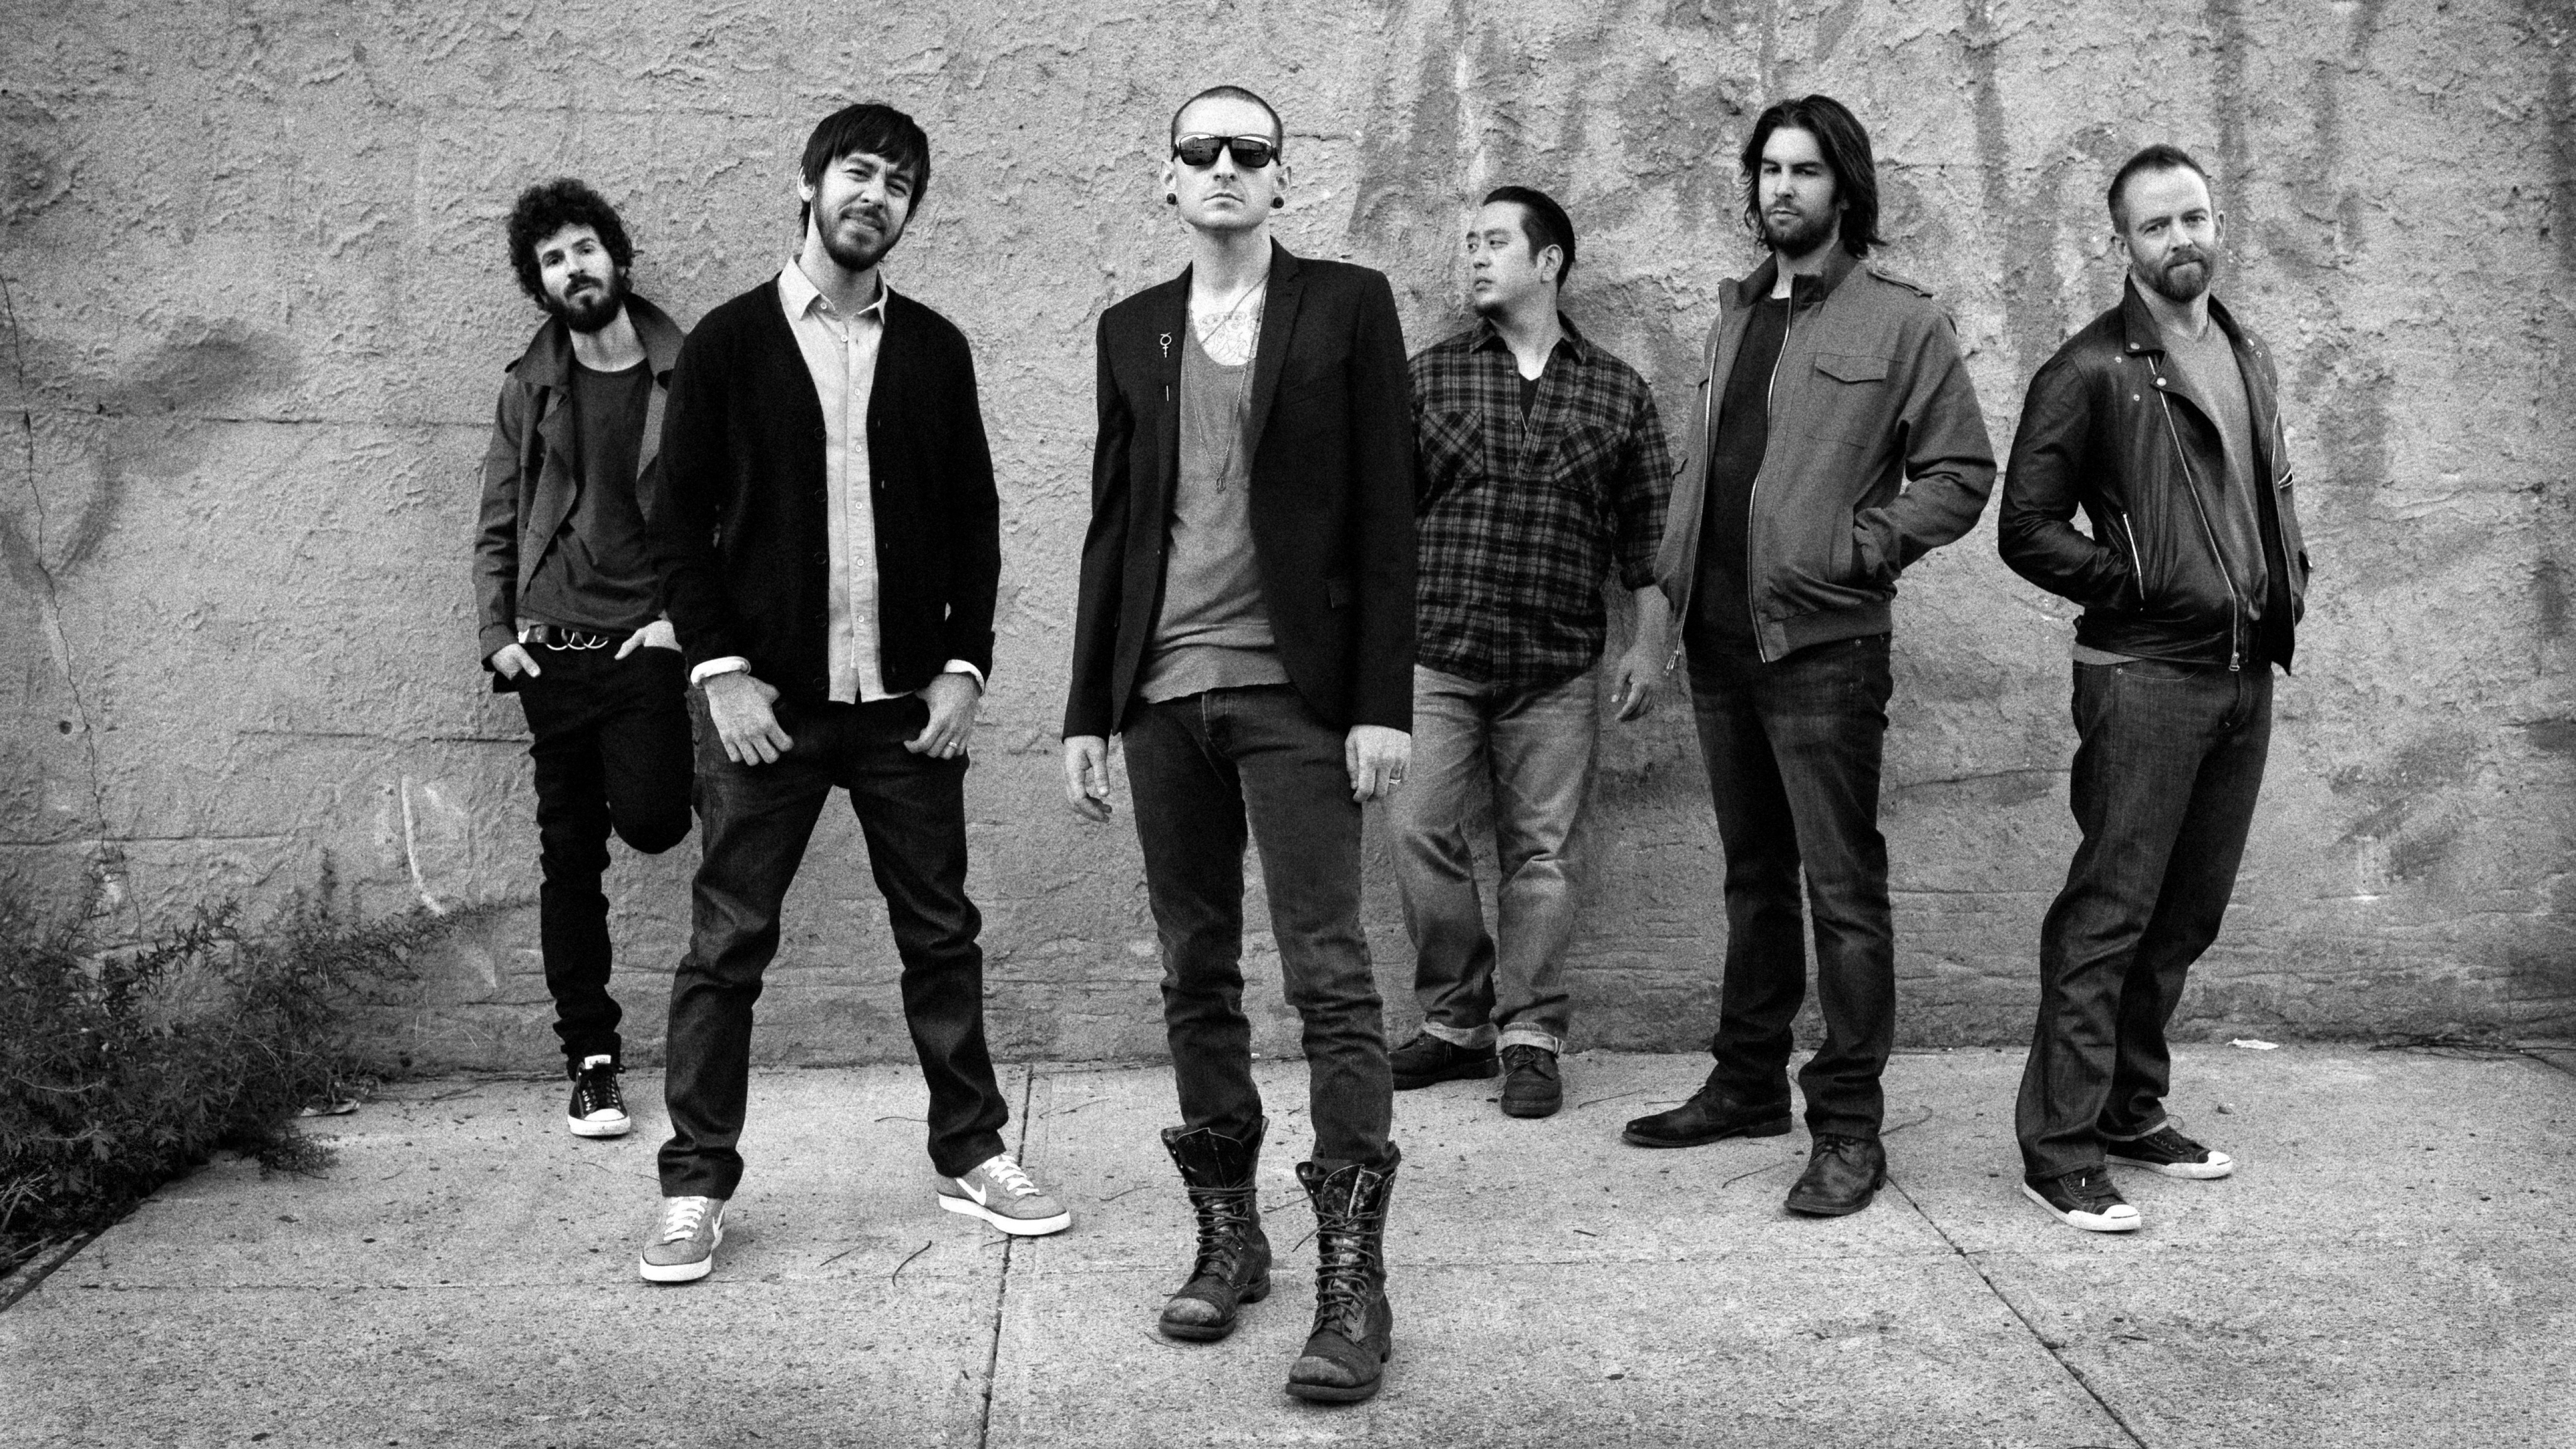 Linkin Park , HD Wallpaper & Backgrounds